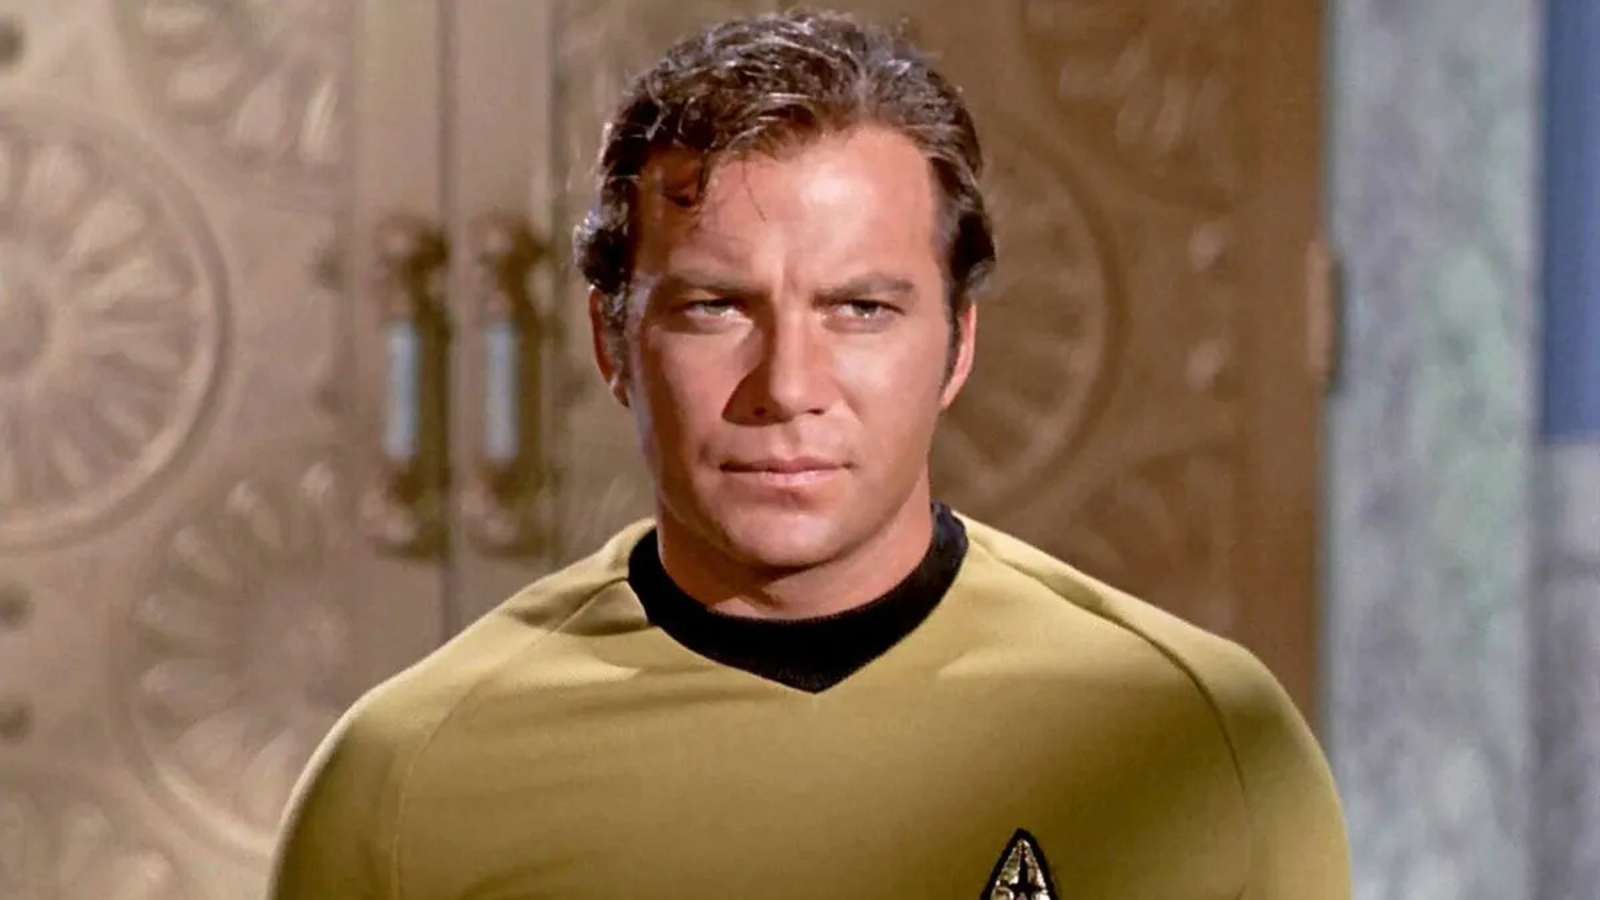 William Shatner as Captain Kirk in Star Trek